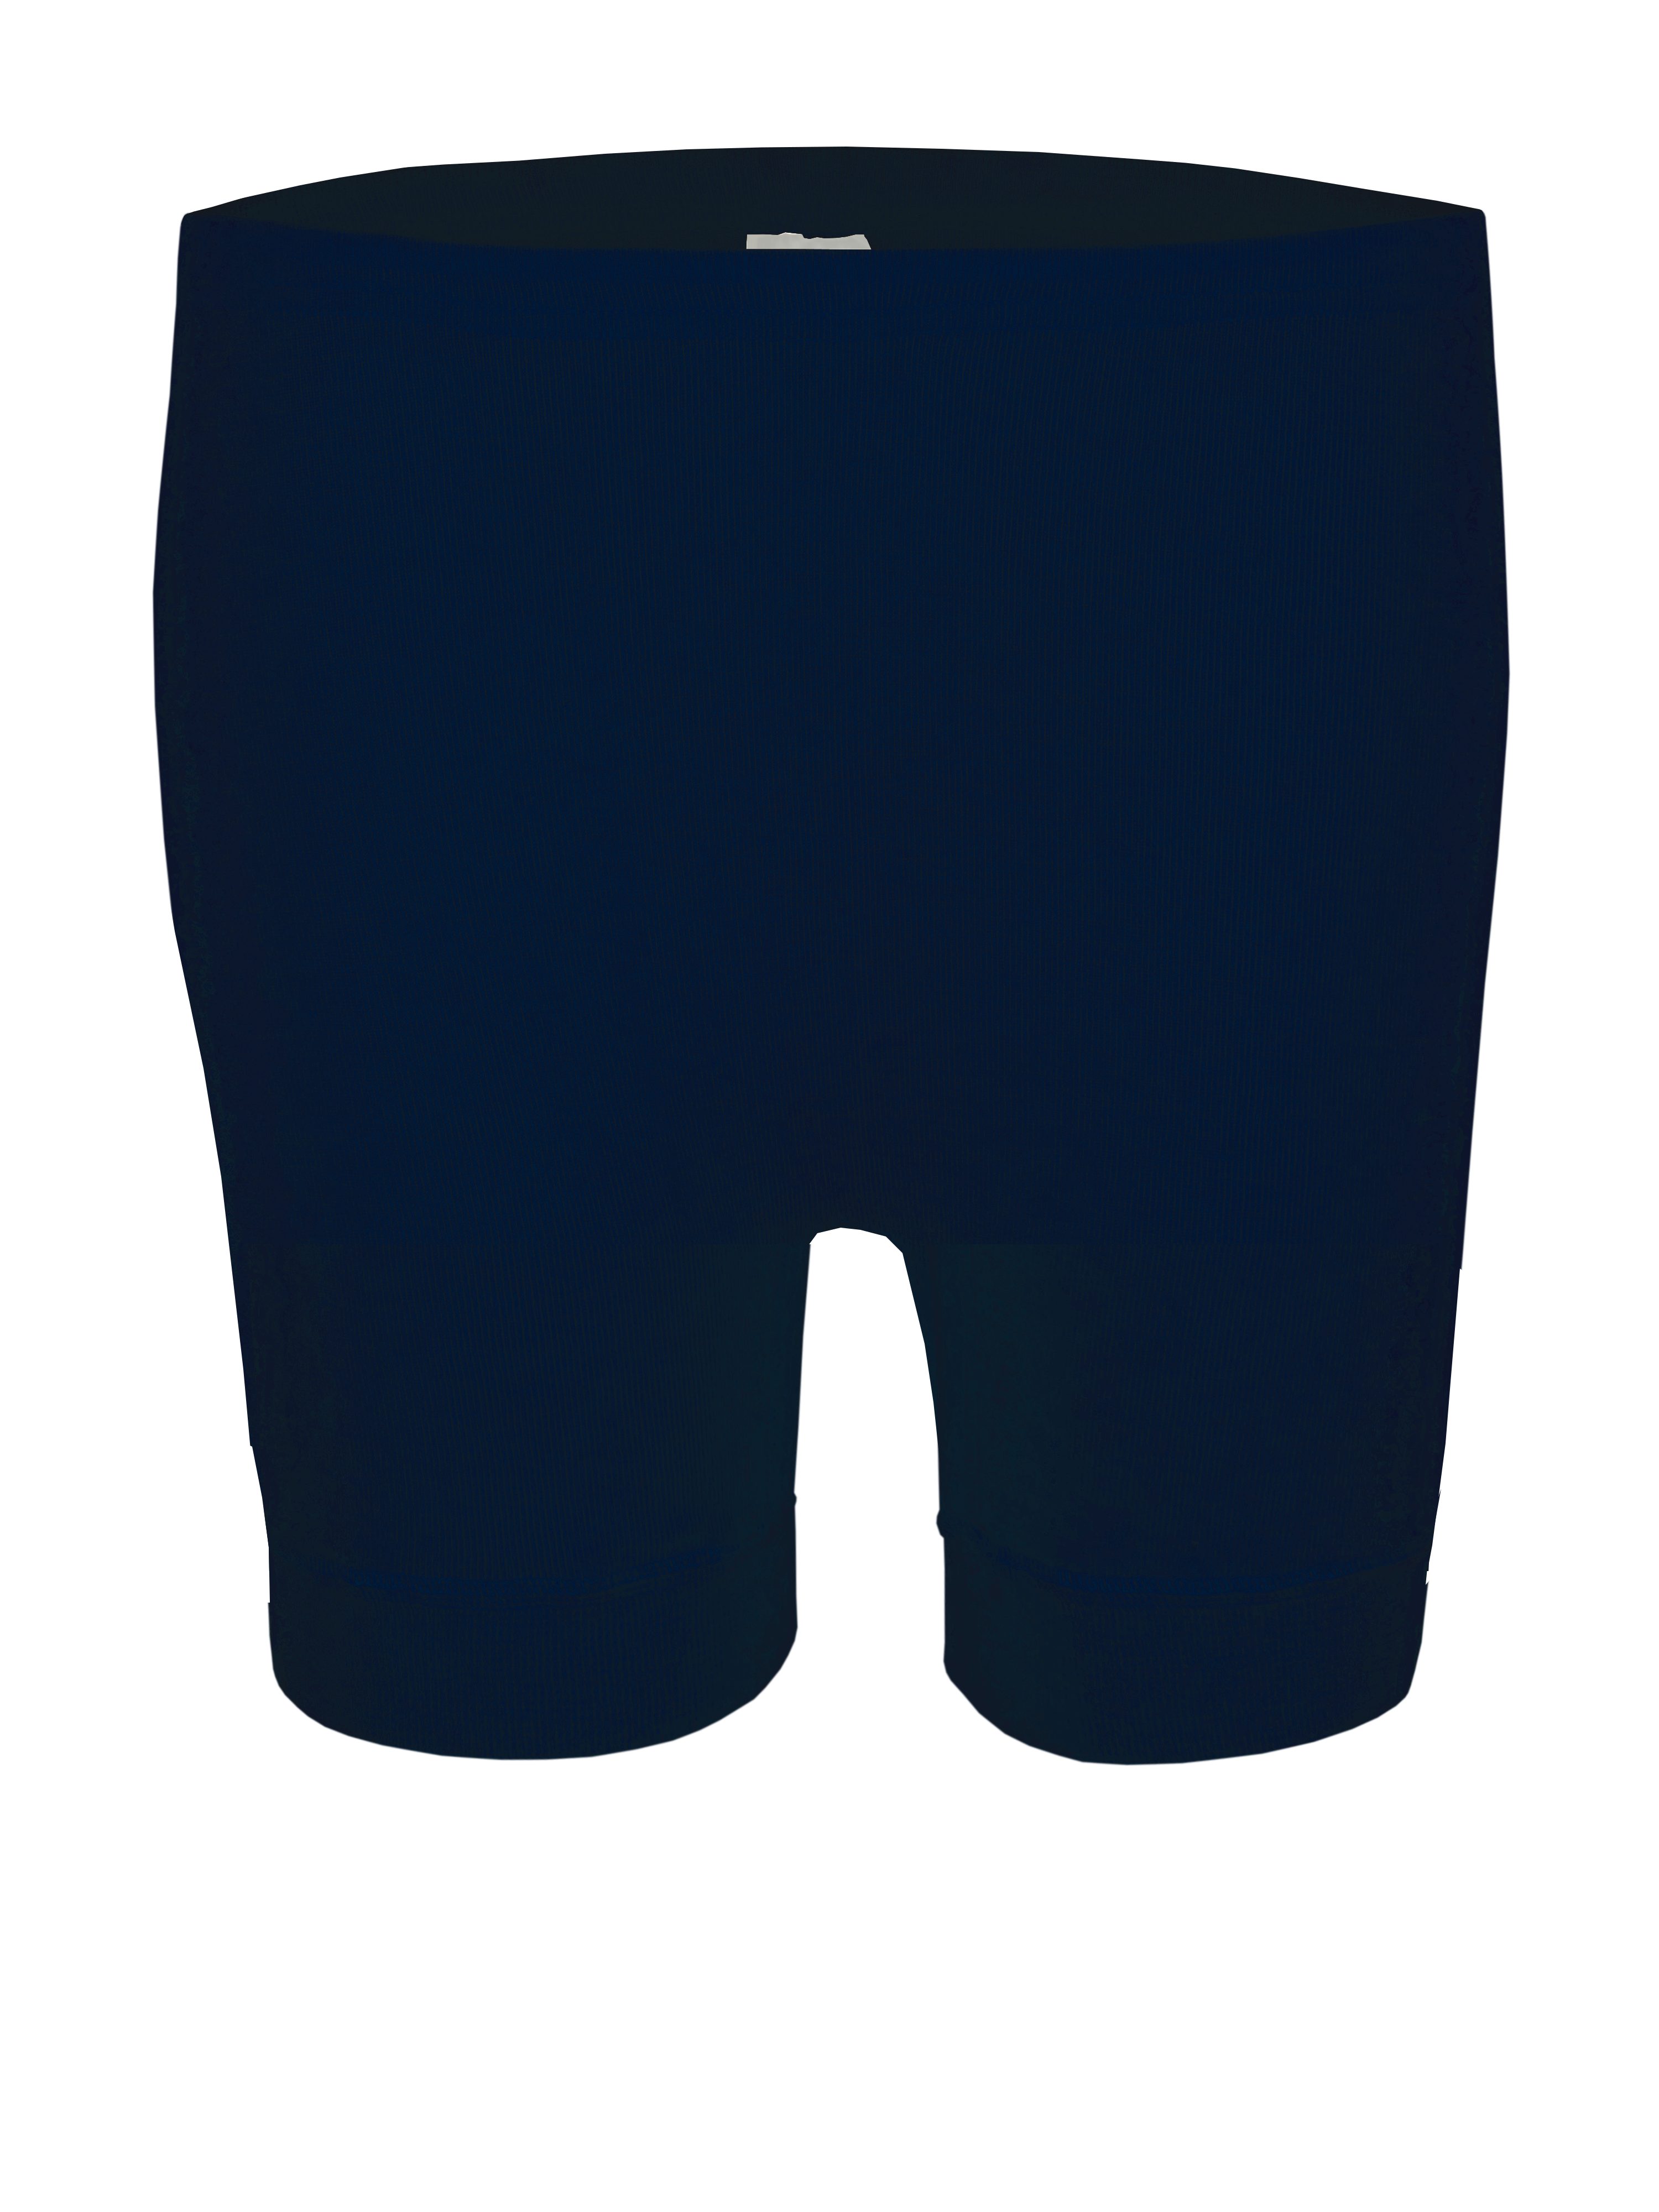 wobera NATUR Panty Unterhose mit Bein (ca. 15 cm) mit Schurwolle GOTS und Seide marine